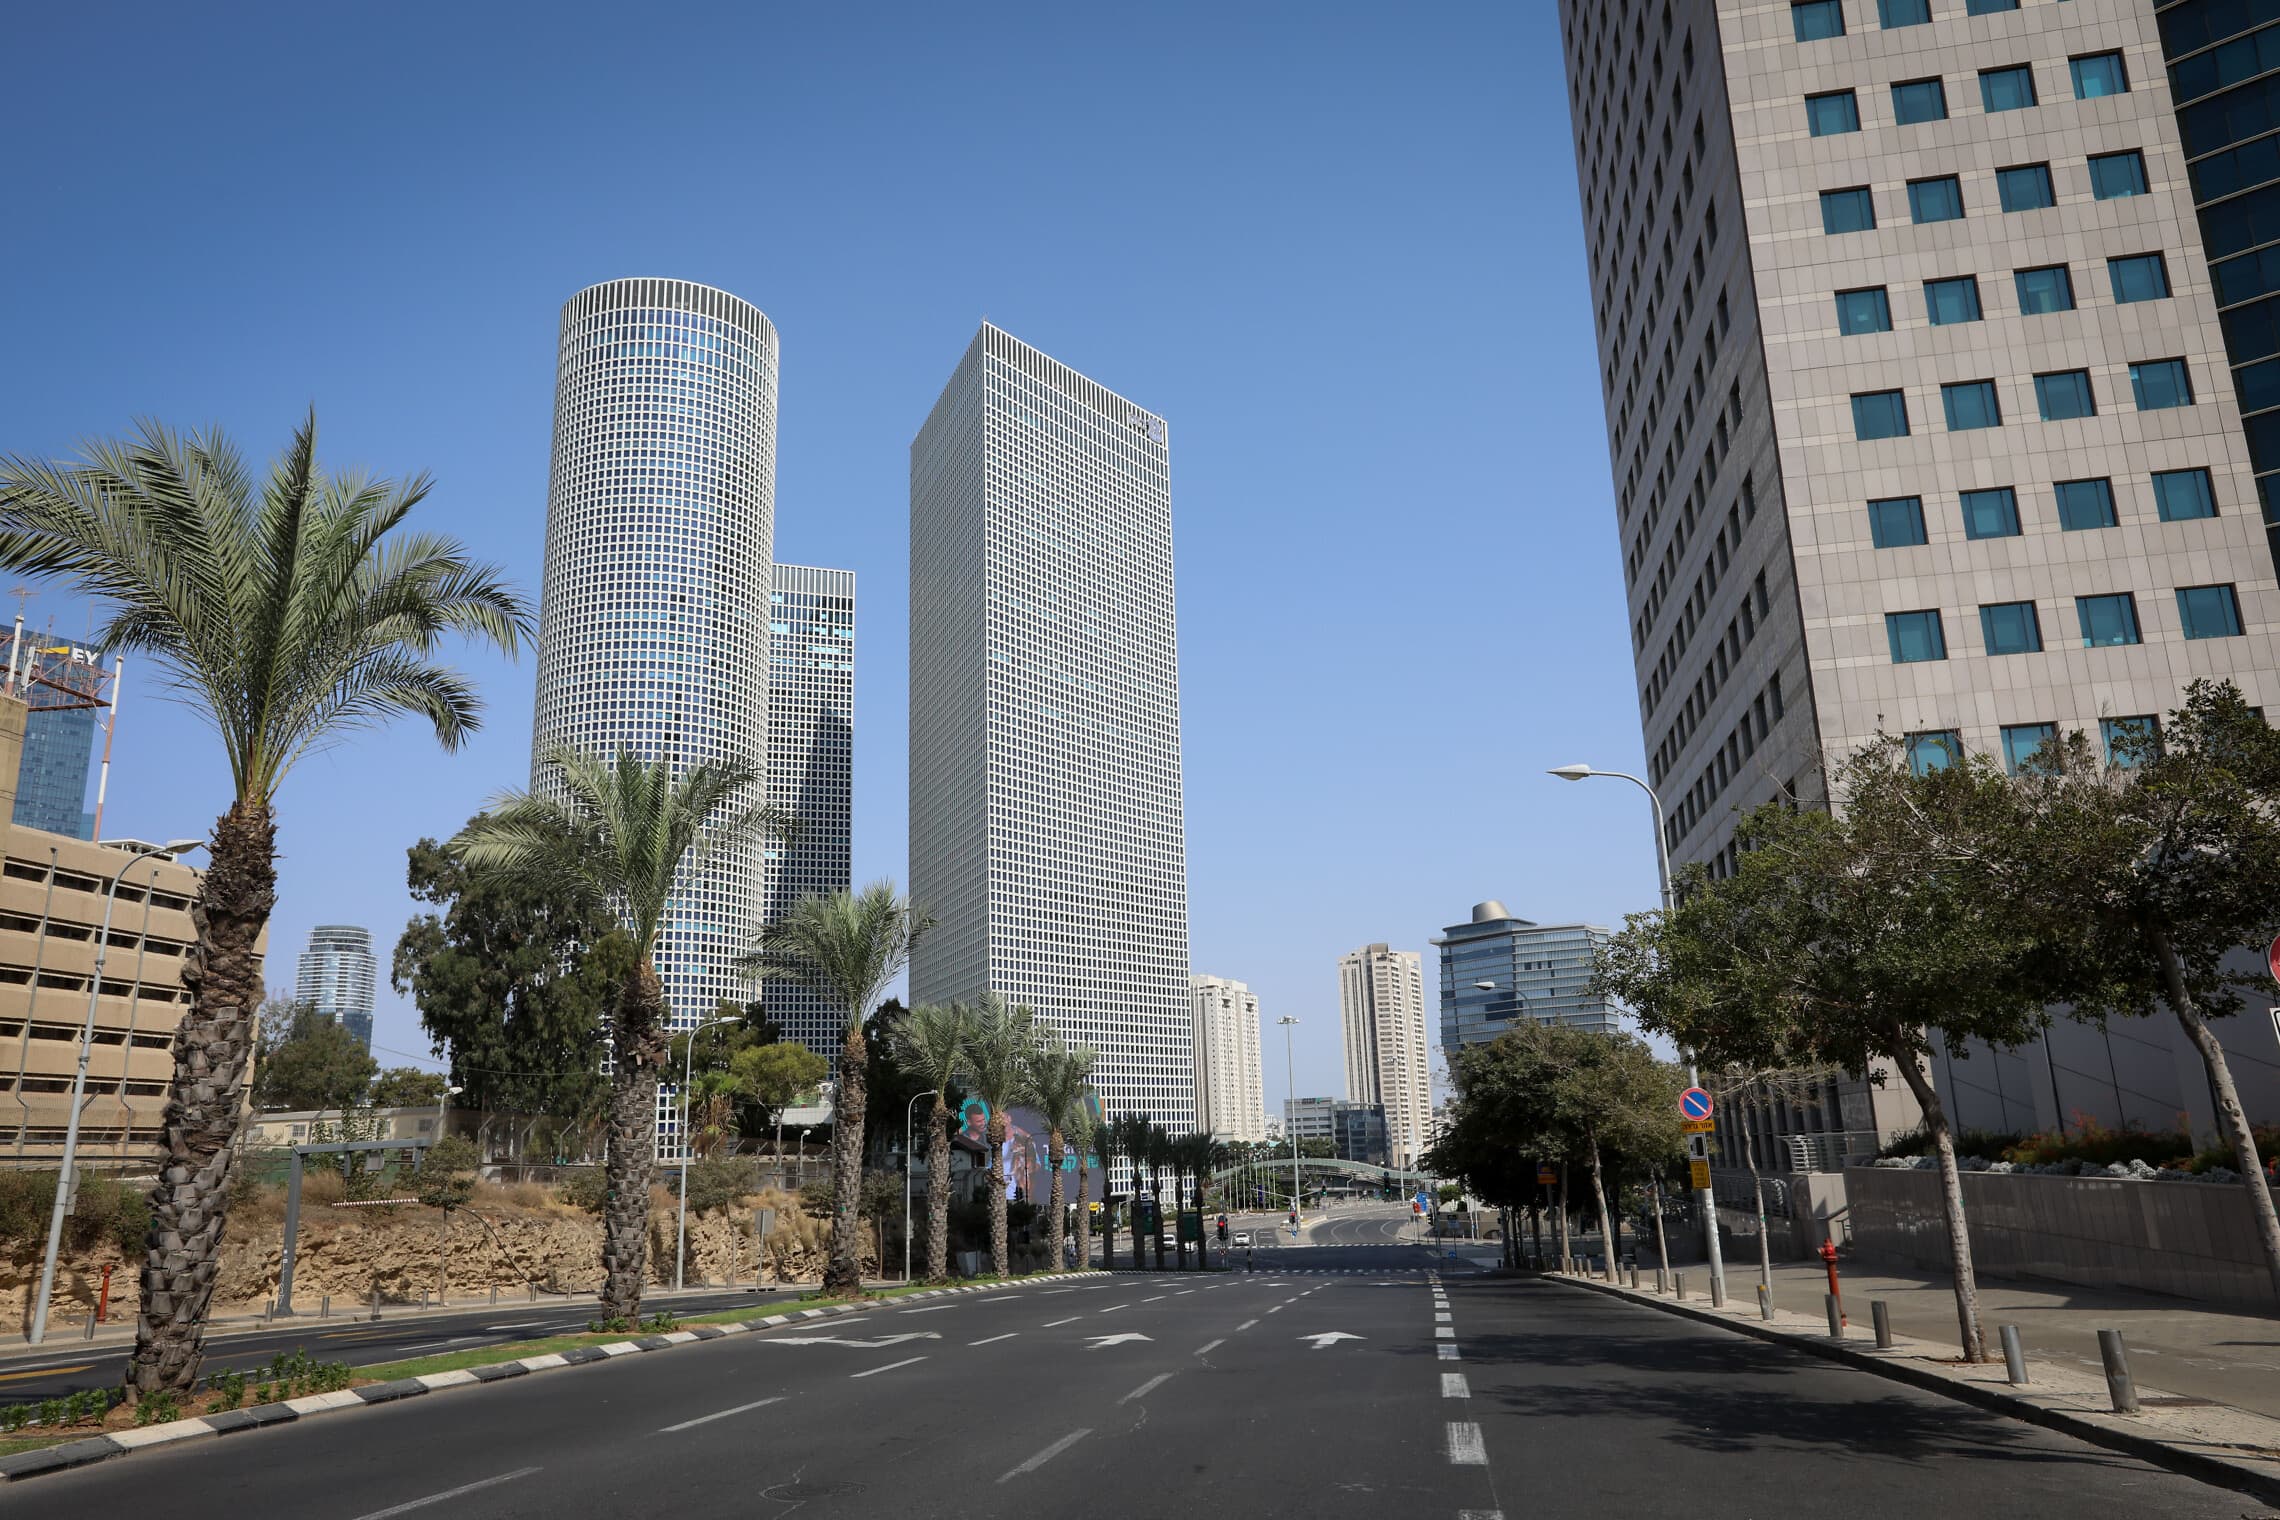 מגדלי עזריאלי משקיפים על הרחובות הריקים של תל אביב במהלך הסגר השני, 20 בספטמבר 2020 (צילום: מנחם לדרמן/פלאש90)